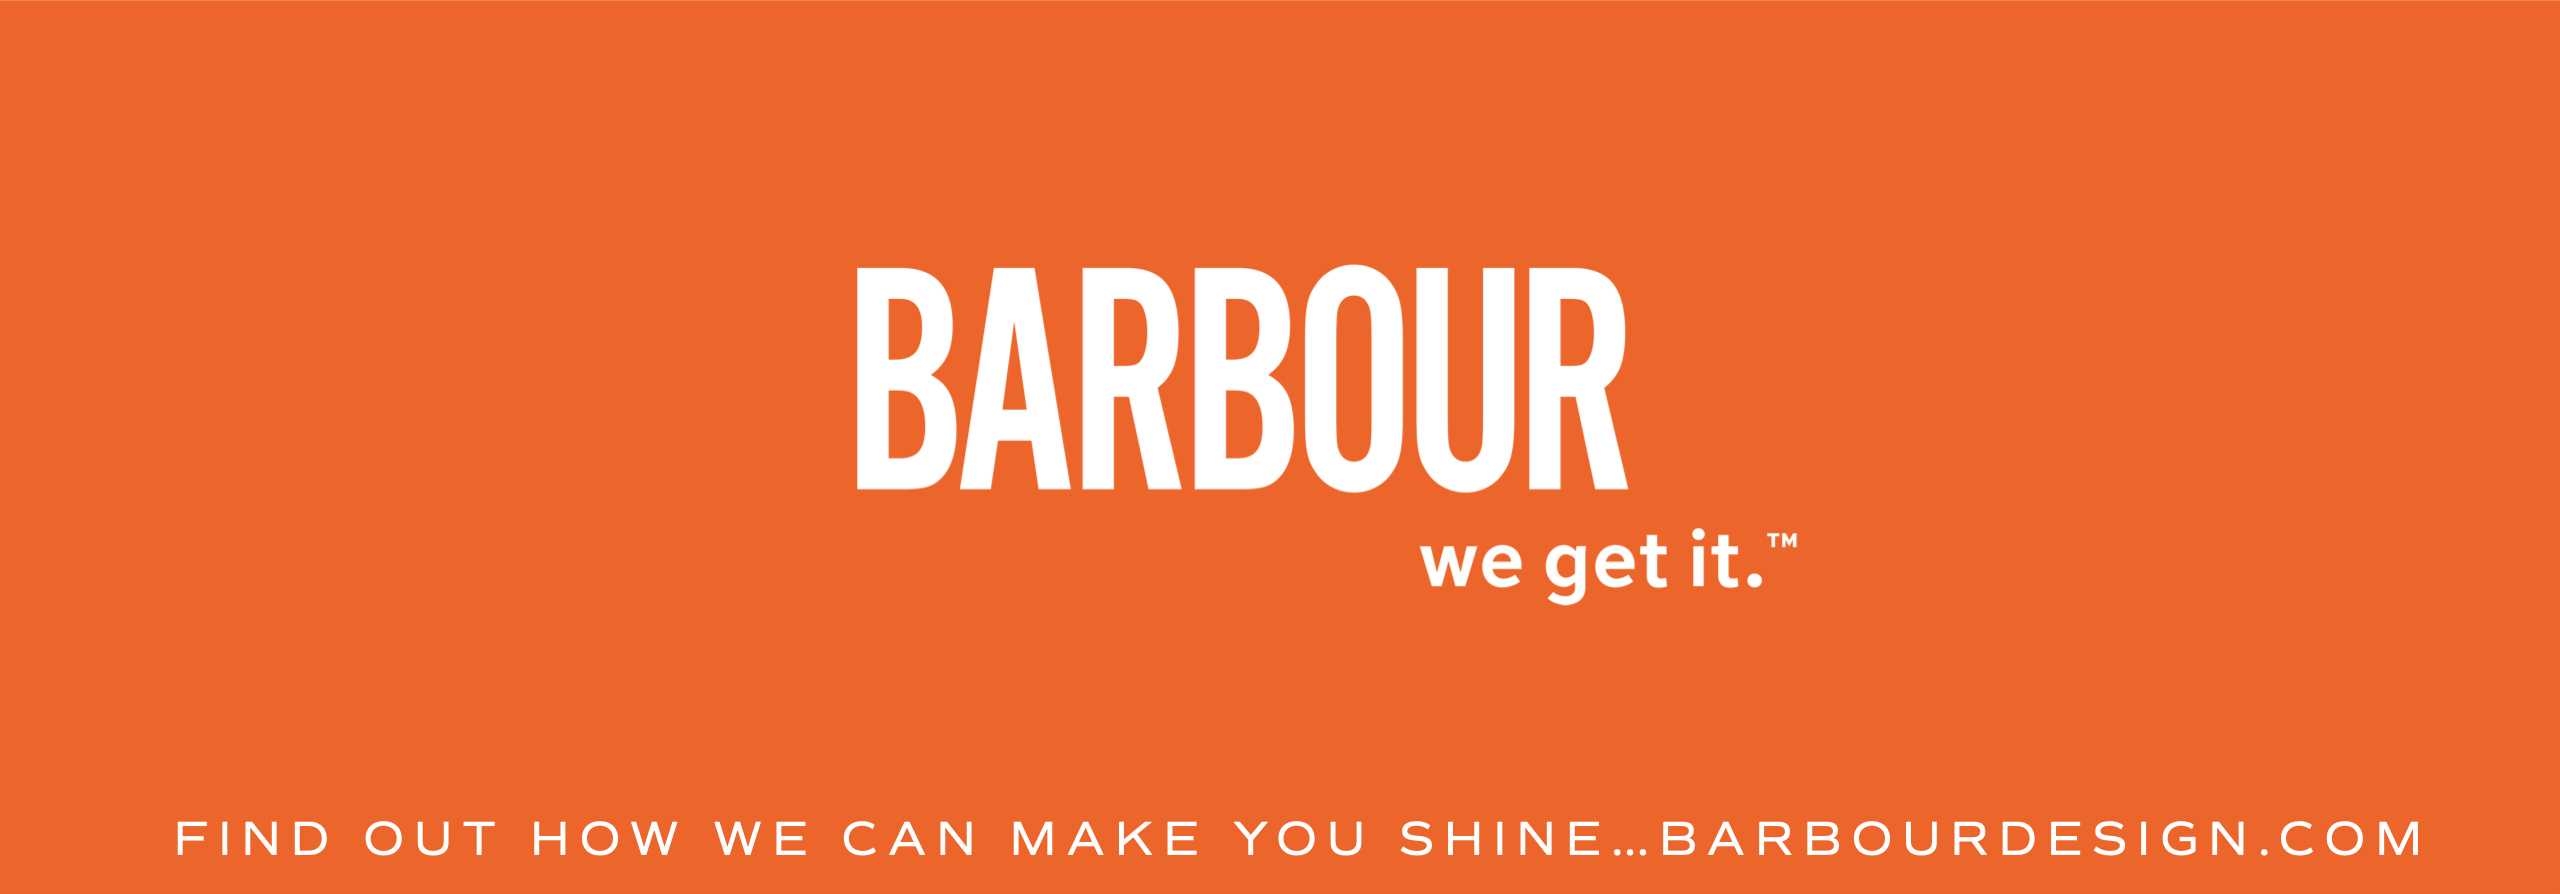 BarbourDesignWork+Capabilities_General EDITED 4 WEB 8-12.060Top